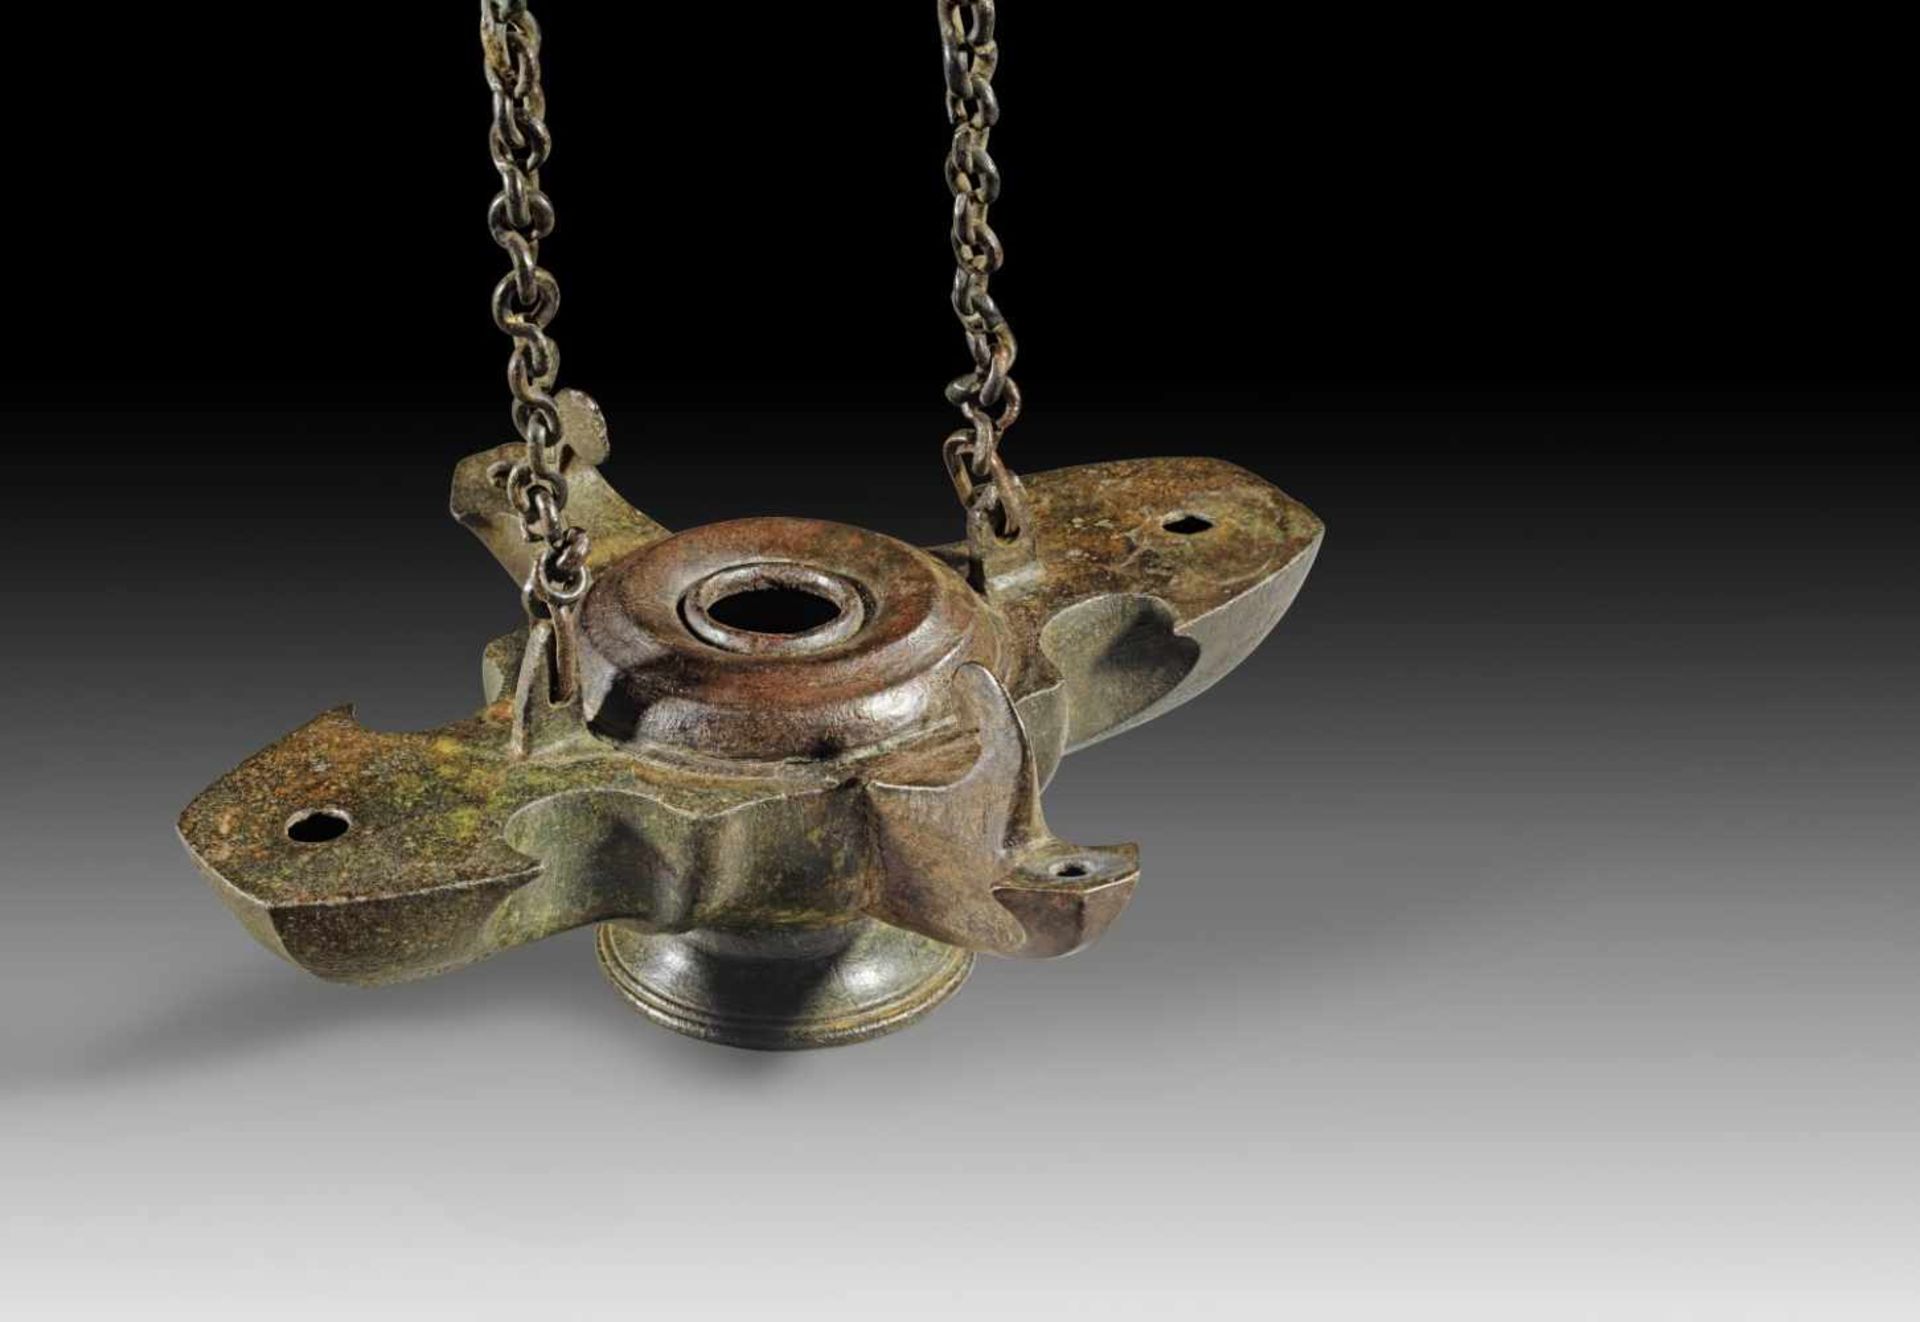 Vierschnauzige Bronzelampe. Römisch, 1. - 2. Jh. n. Chr. Lampe H 8,5cm, L 22cm, B 18,7cm, Kette L